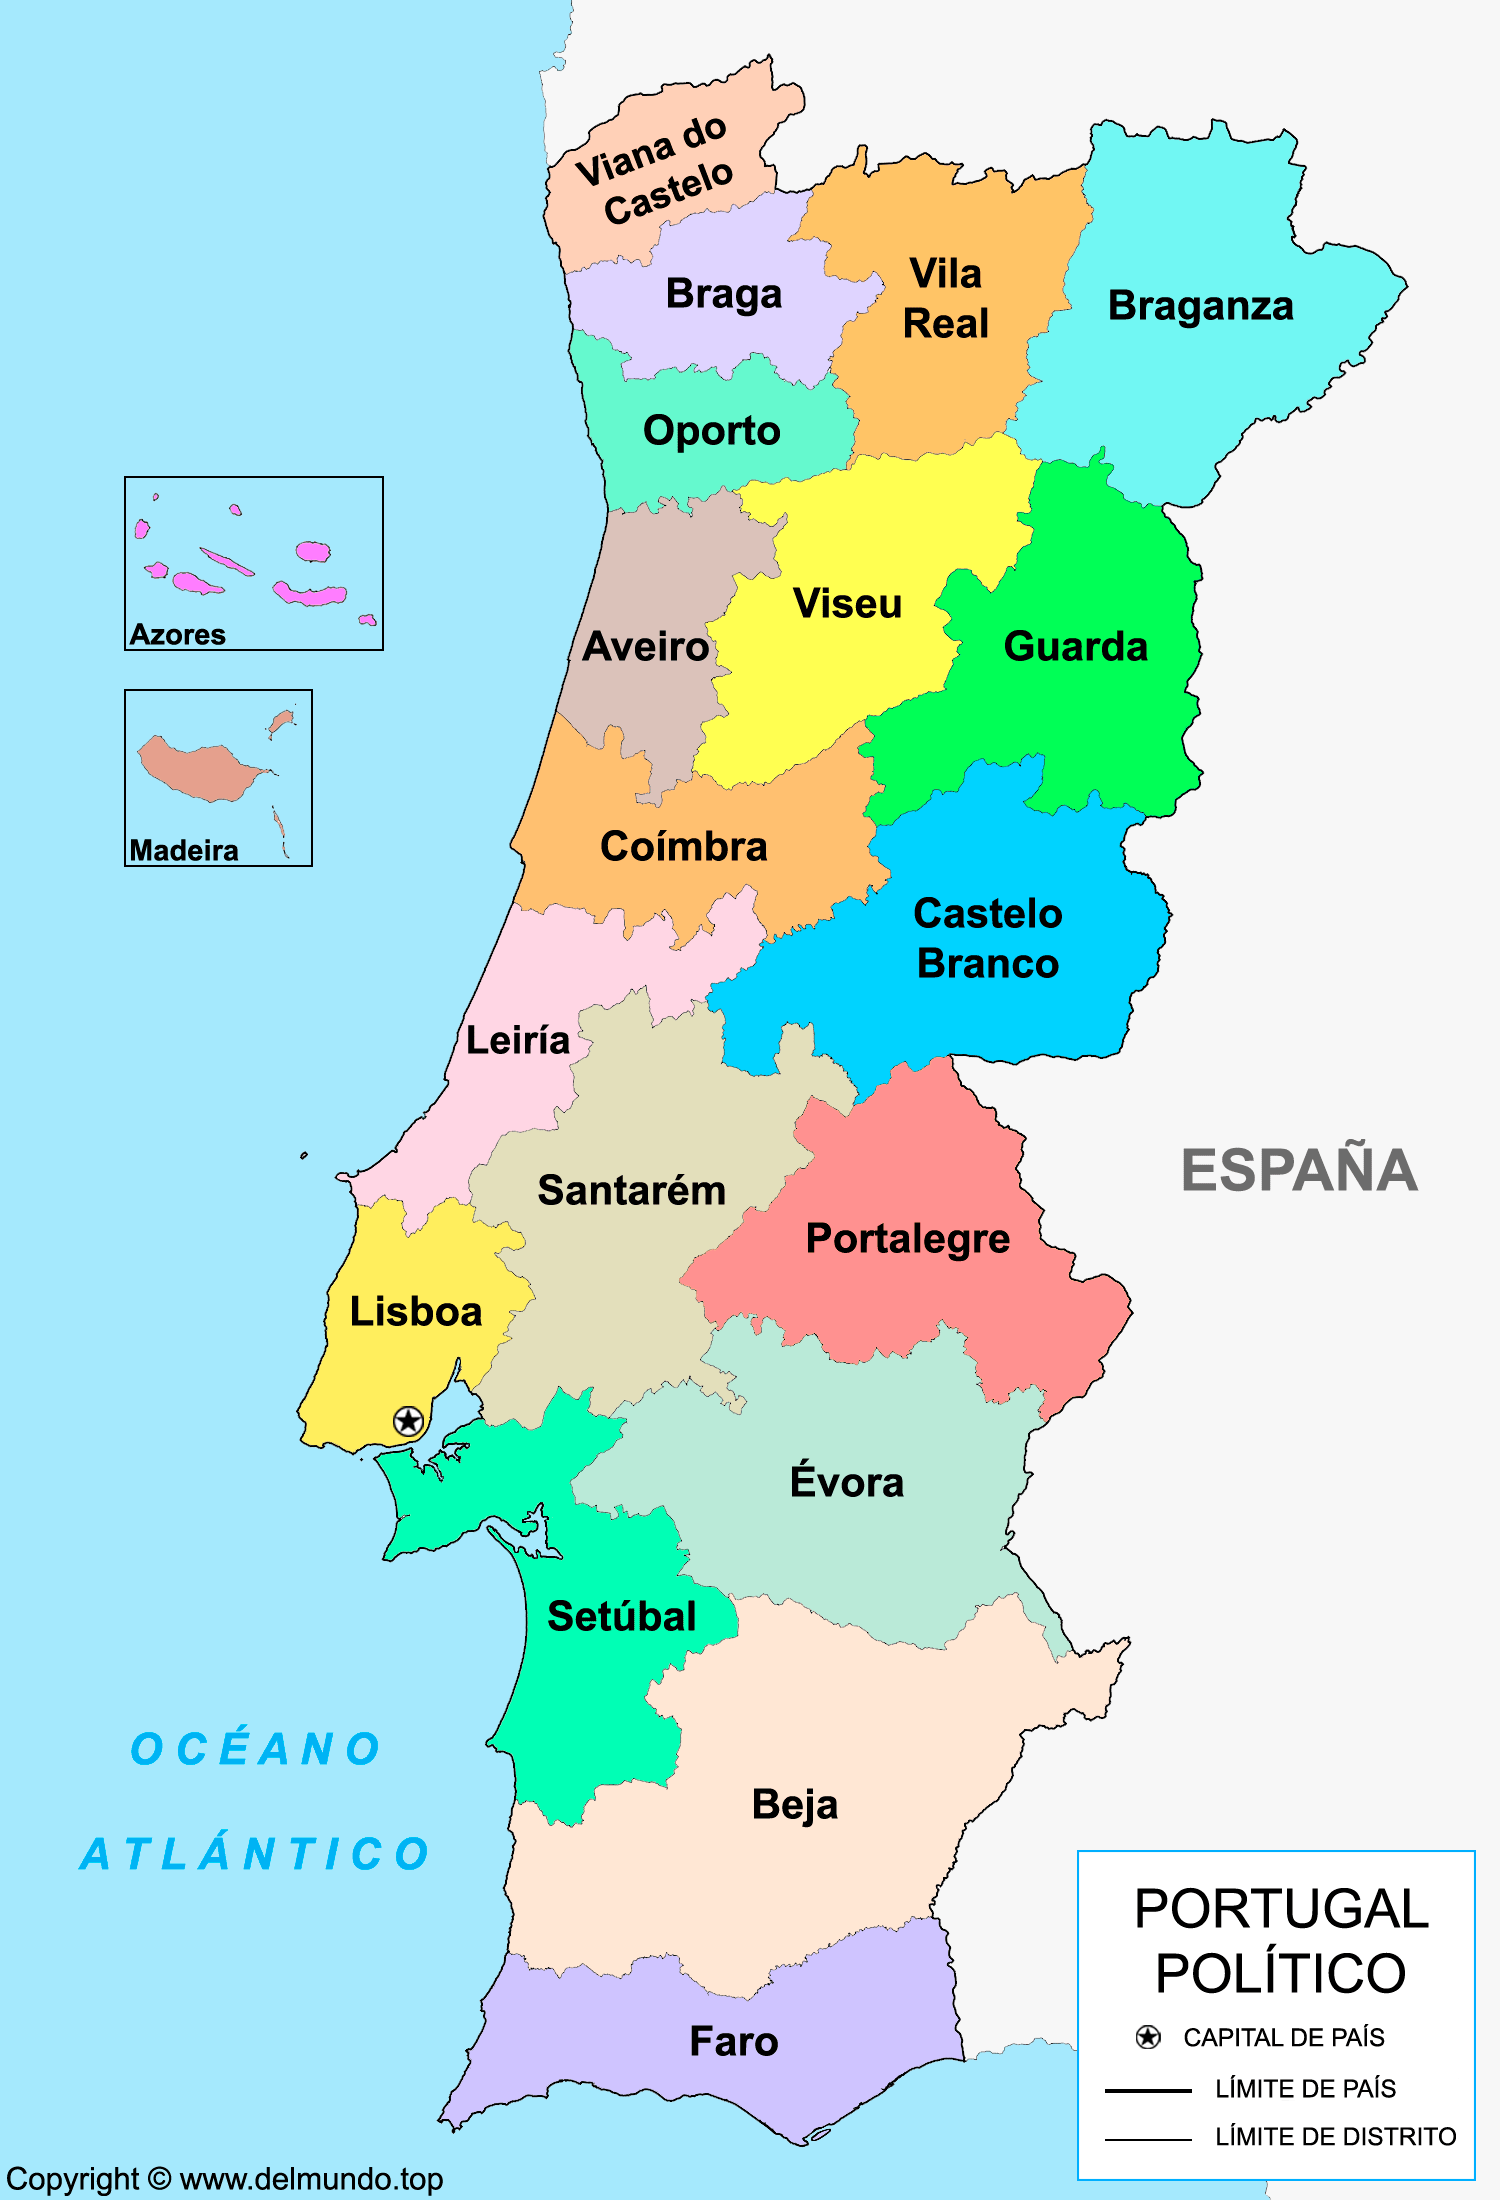 Mapa político de Portugal